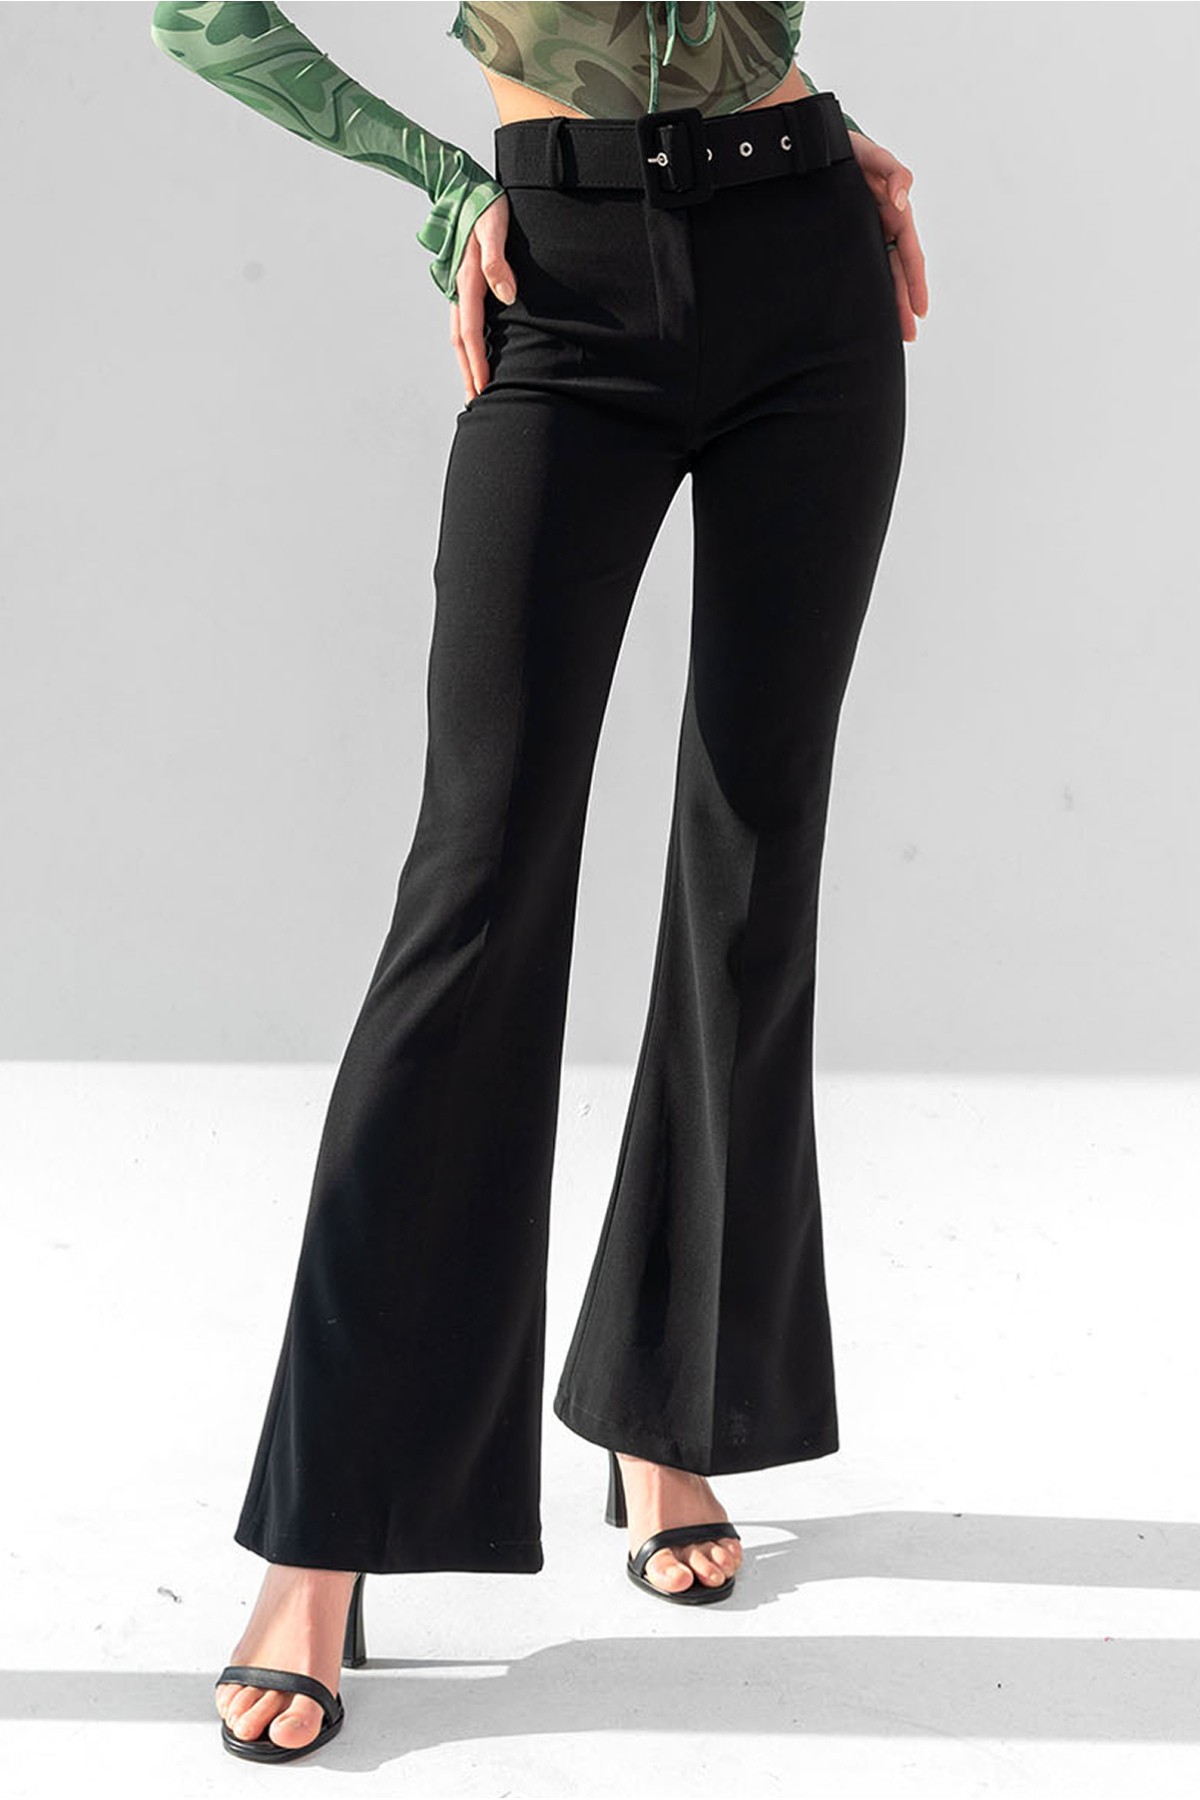 Pantalon large taille haute avec ceinture pour femme - Noire